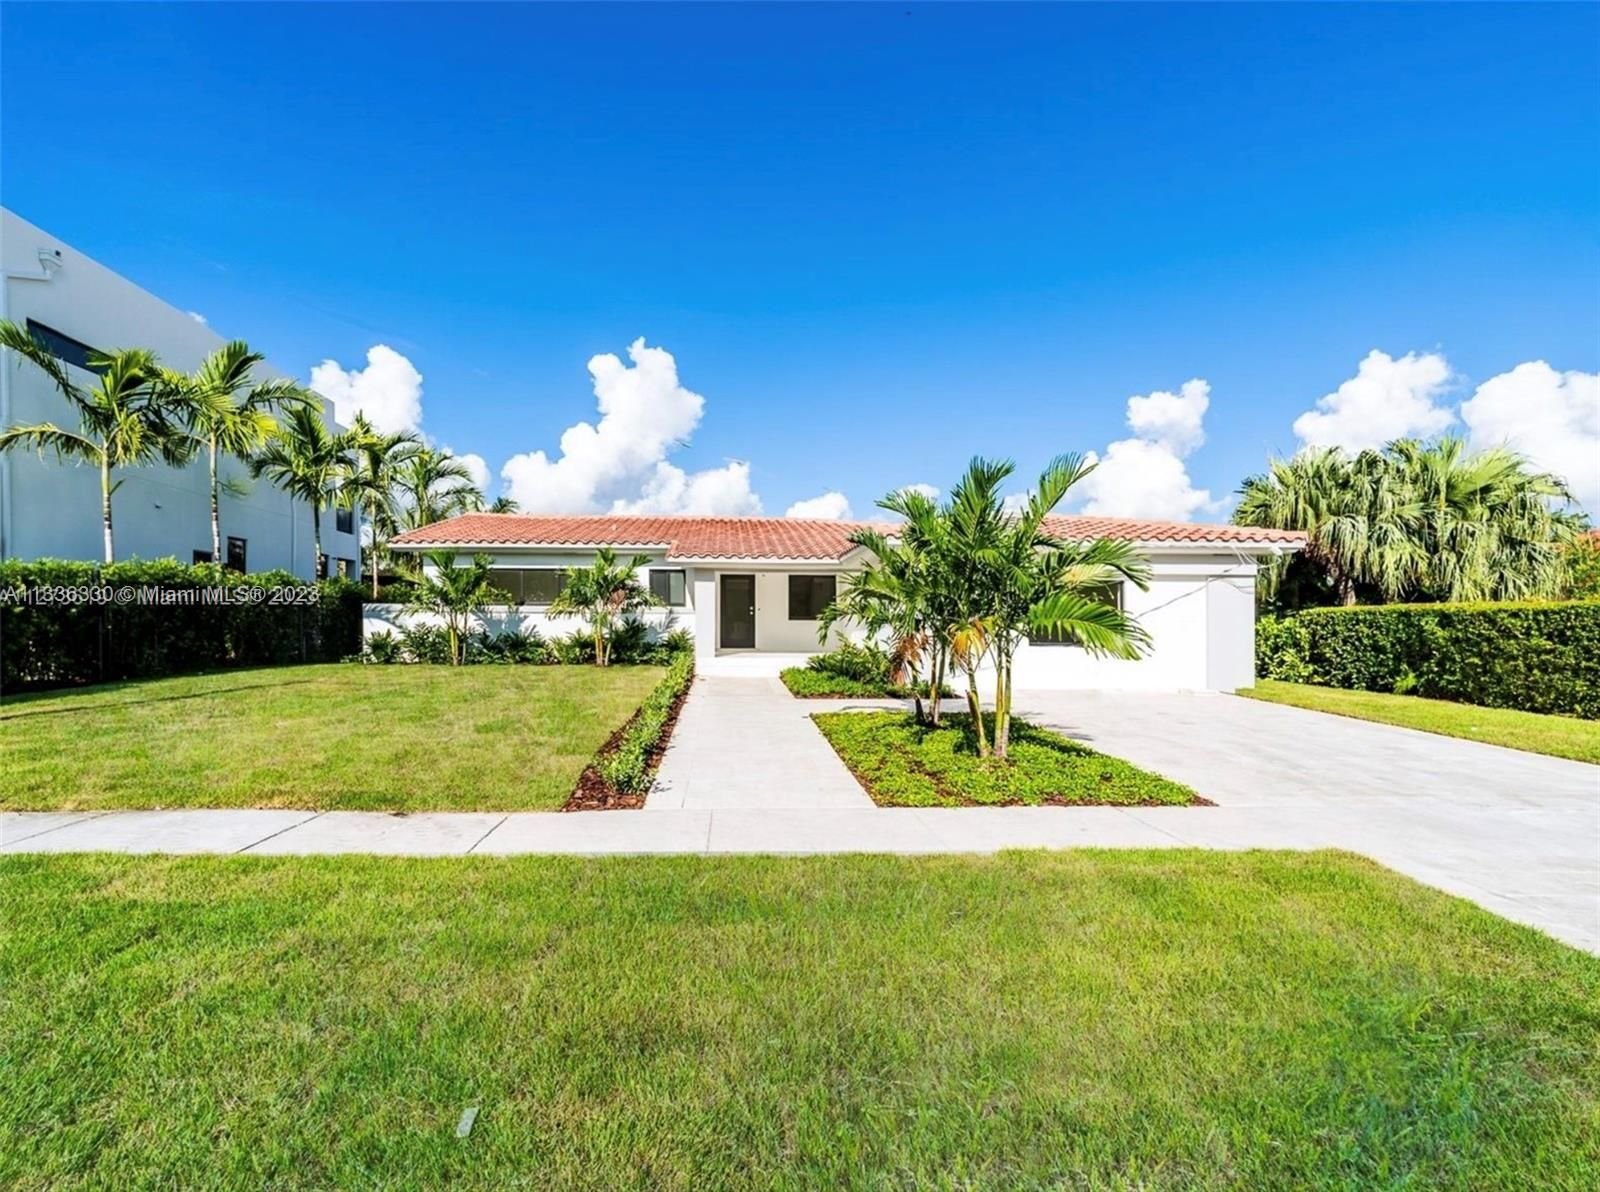 Real estate property located at 13080 Ortega Ln, Miami-Dade County, North Miami, FL